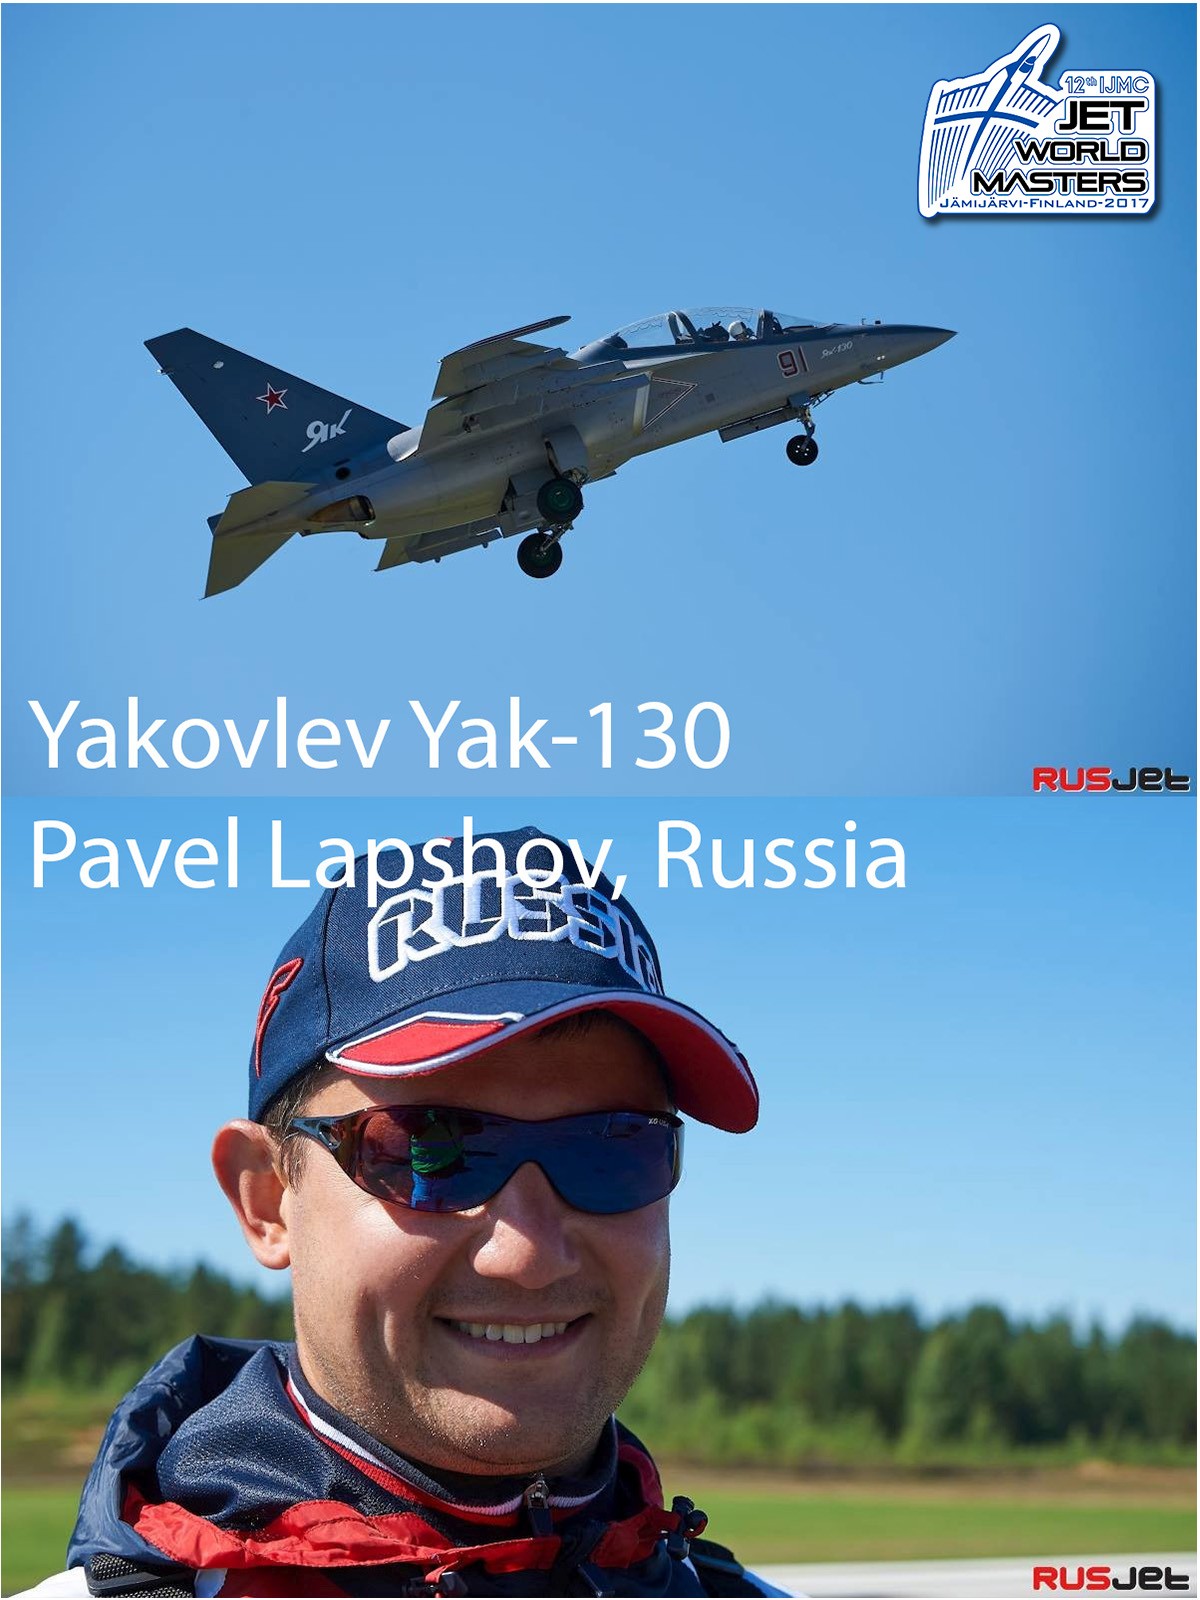 Russia Pavel Lapshov.jpg(243 KB)